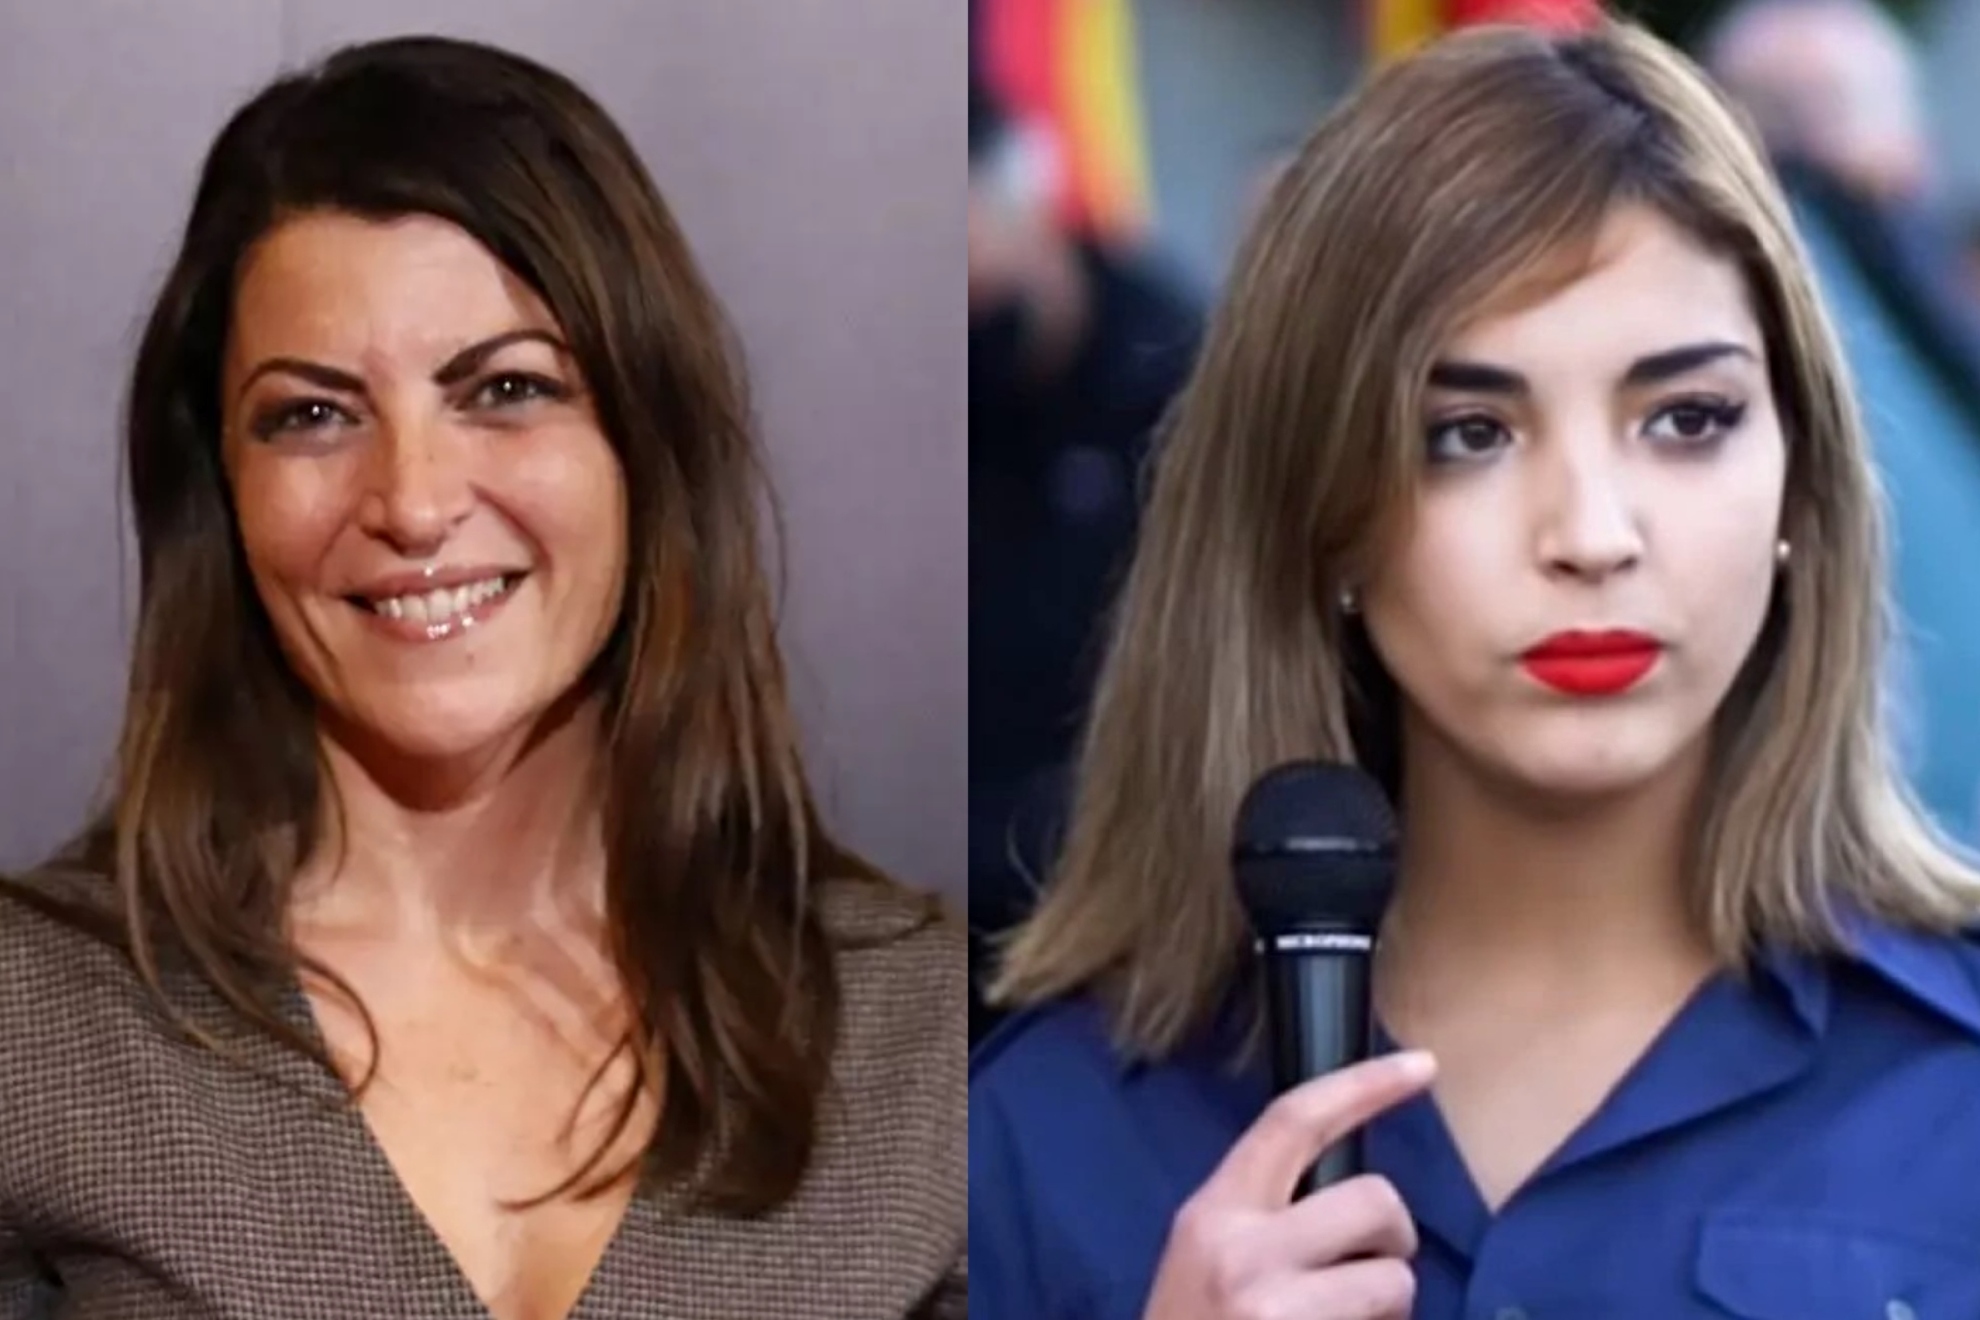 El brutal cruce de insultos entre Macarena Olona y Teresa Peralta: "Calla juda vendida"